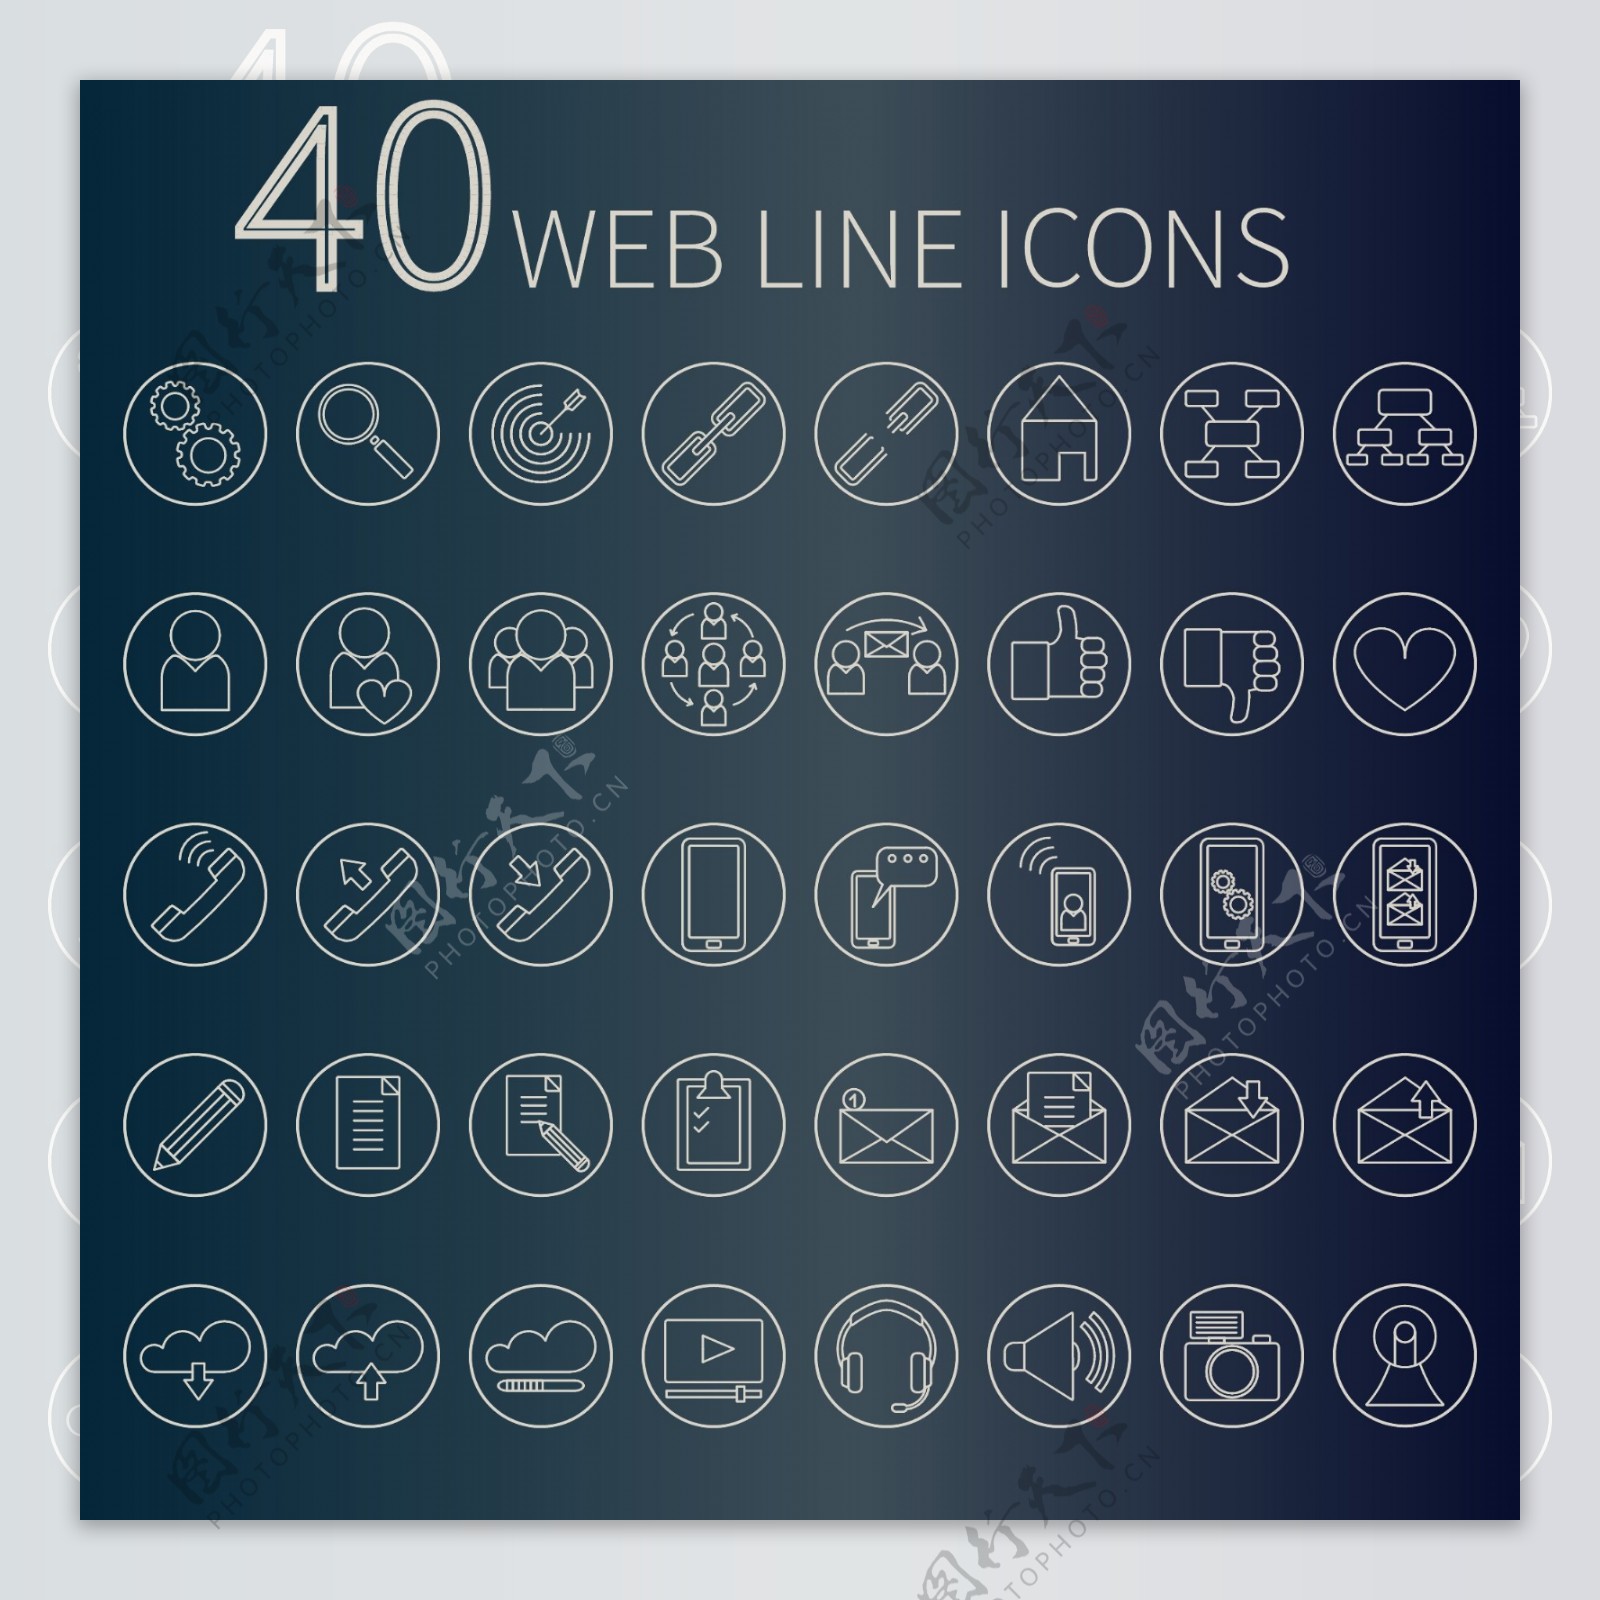 40个手绘组互联网常用图标矢量素材